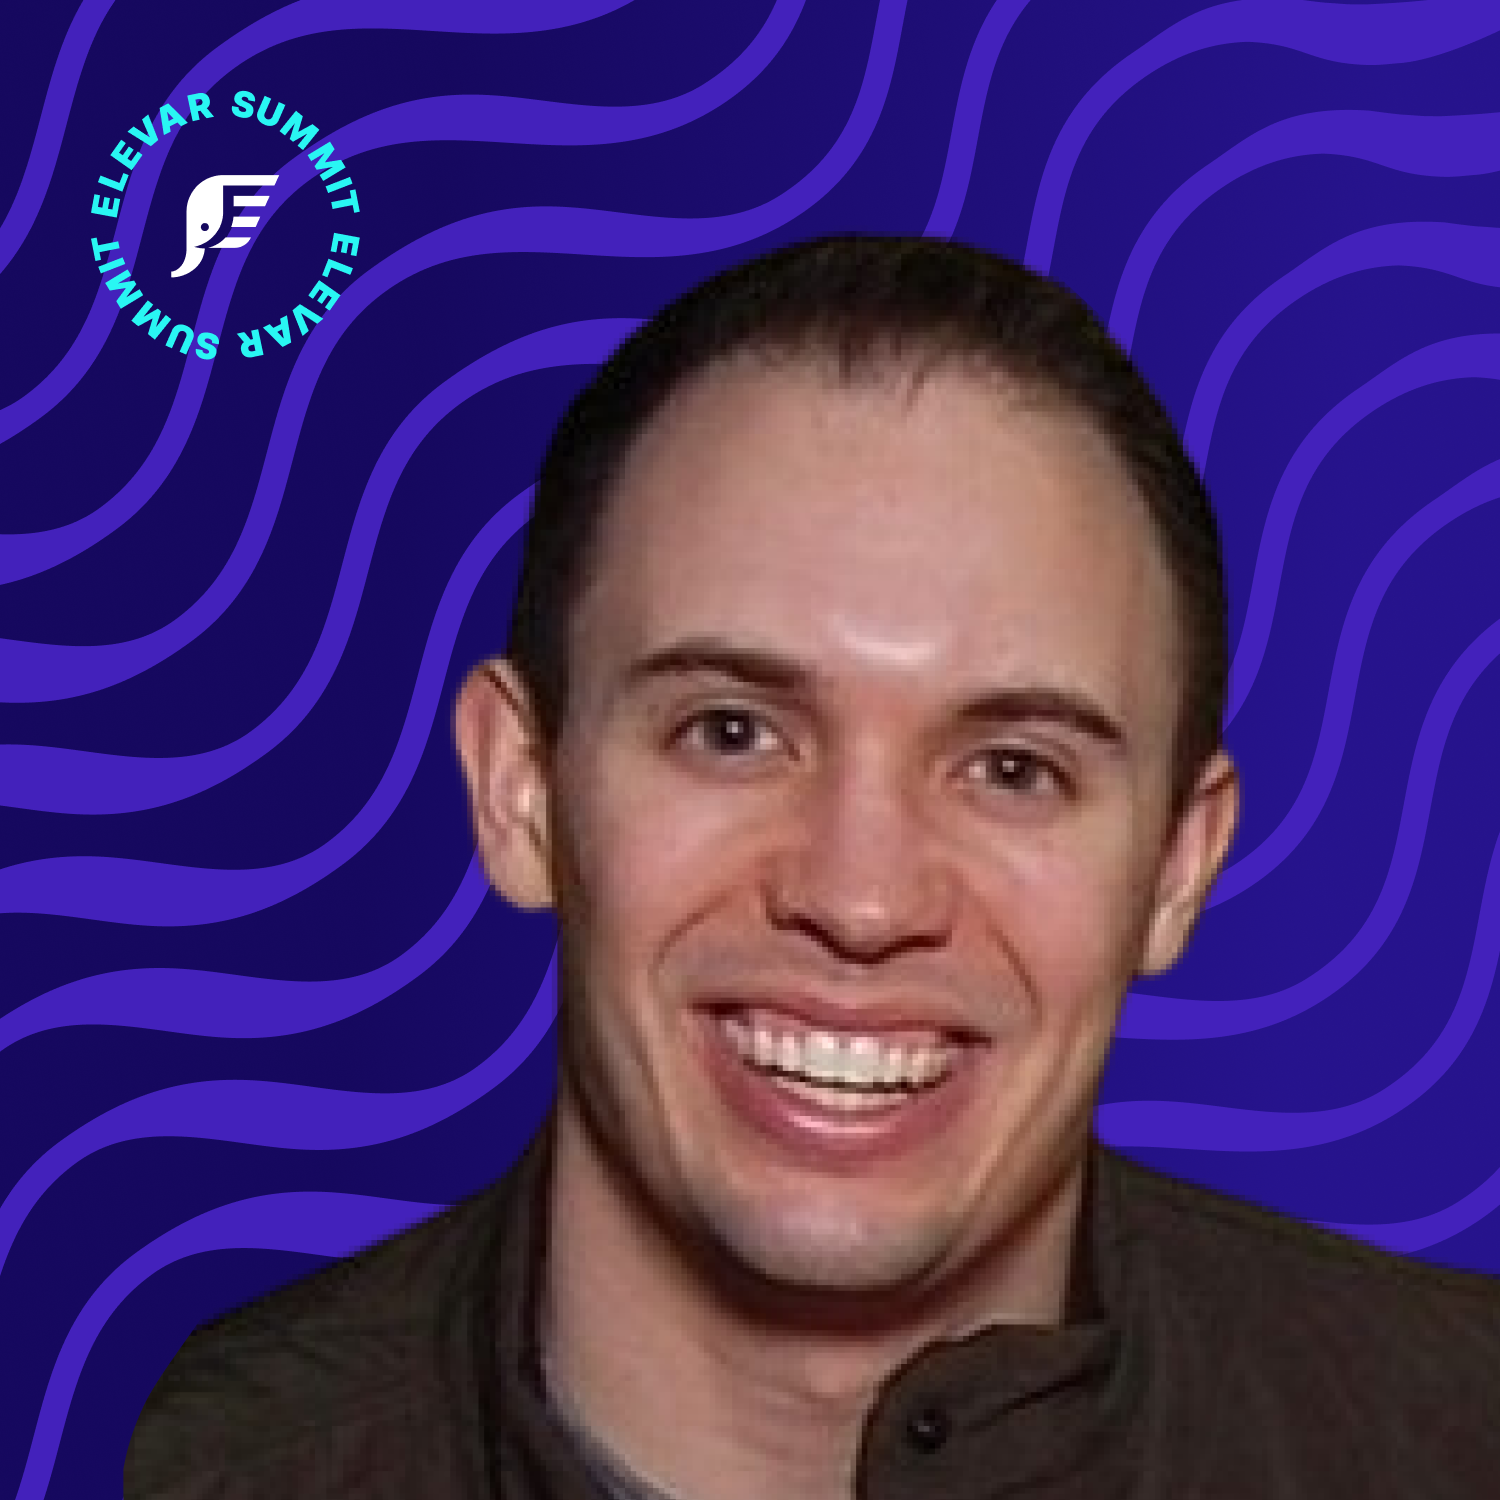 Headshot for Brendan Gardner on purple background with Elevar Summit logo